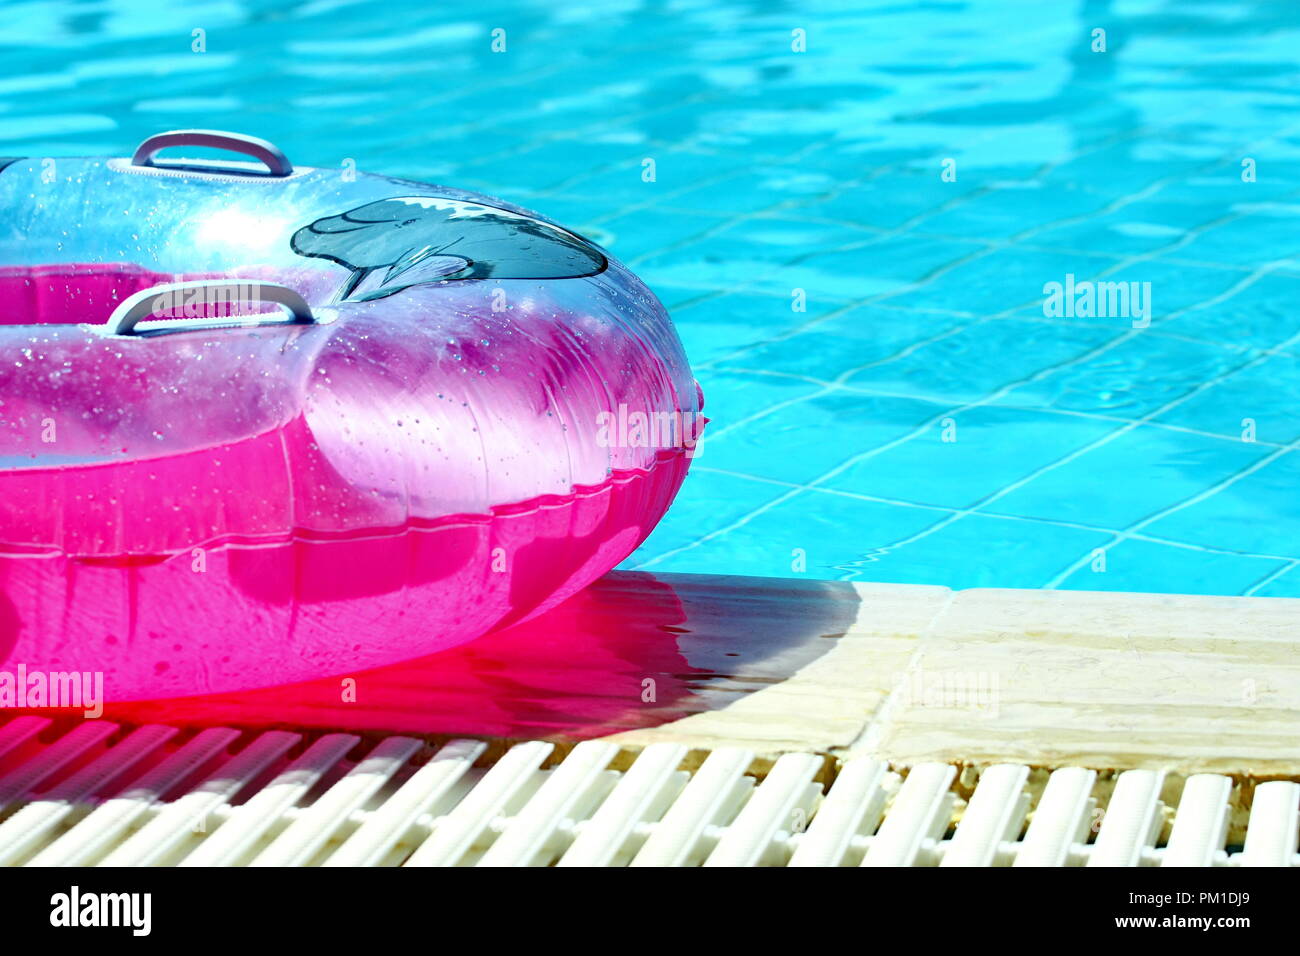 Rosa gonfiabile tubo rotondo in piscina Foto Stock